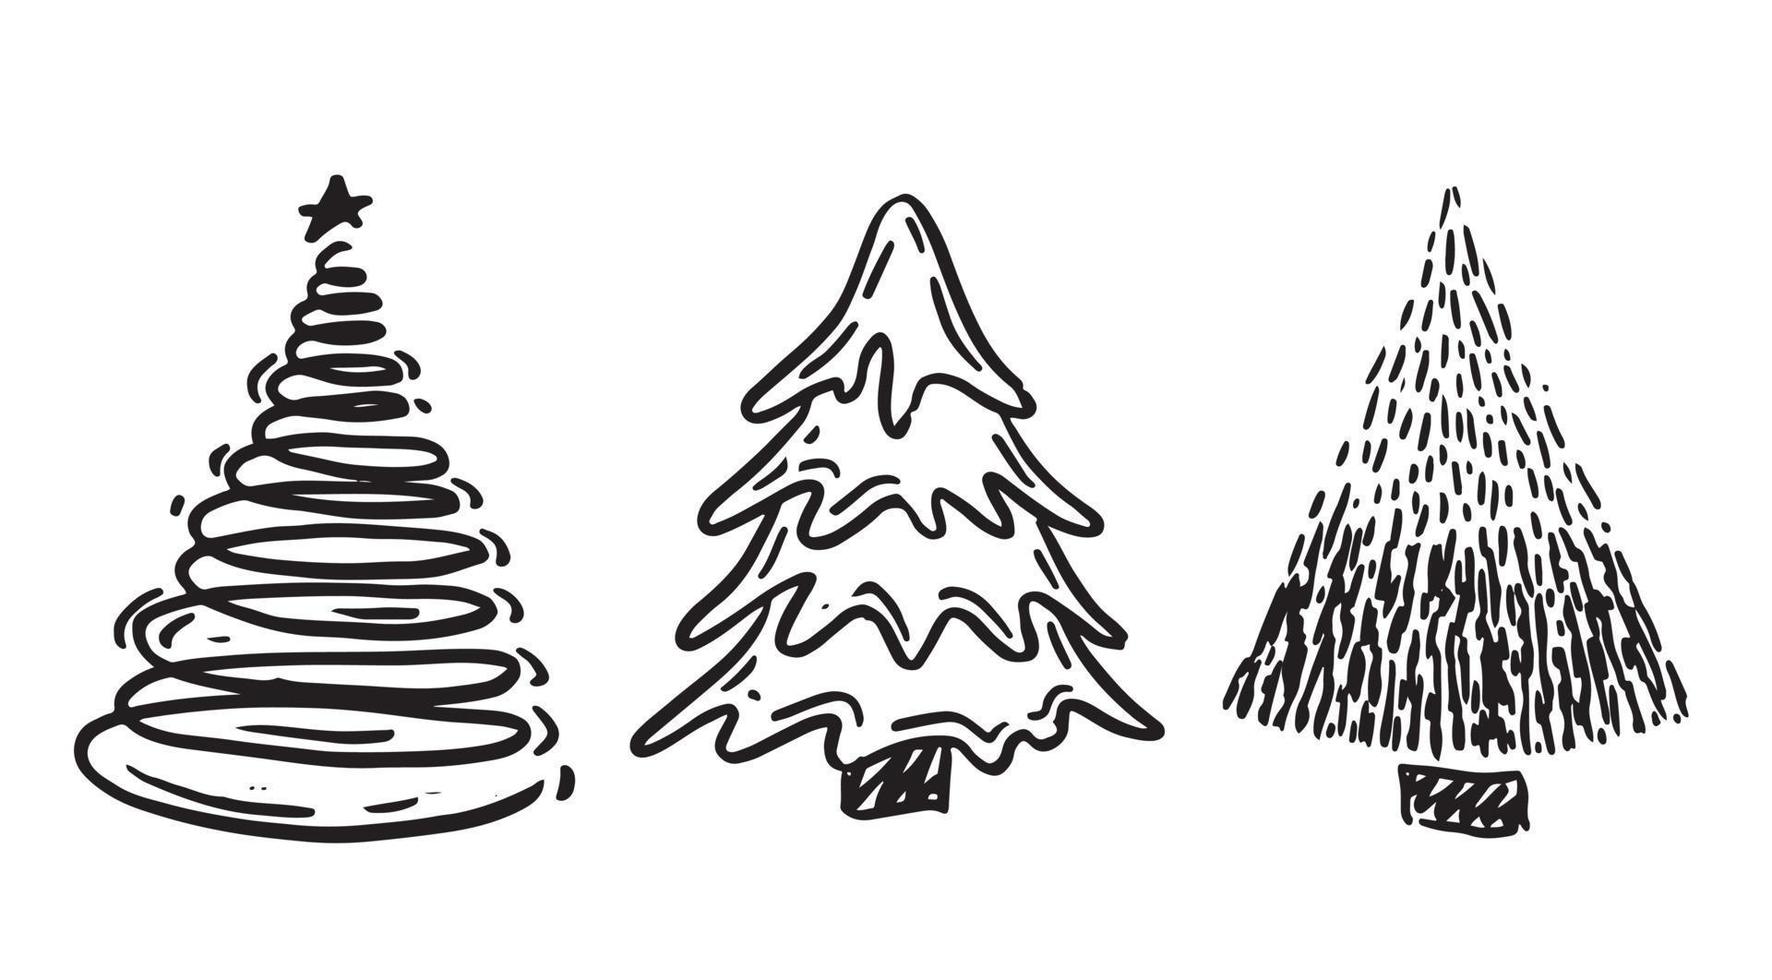 juego de árboles de navidad, feliz navidad y un feliz año nuevo. ilustraciones dibujadas a mano. vector